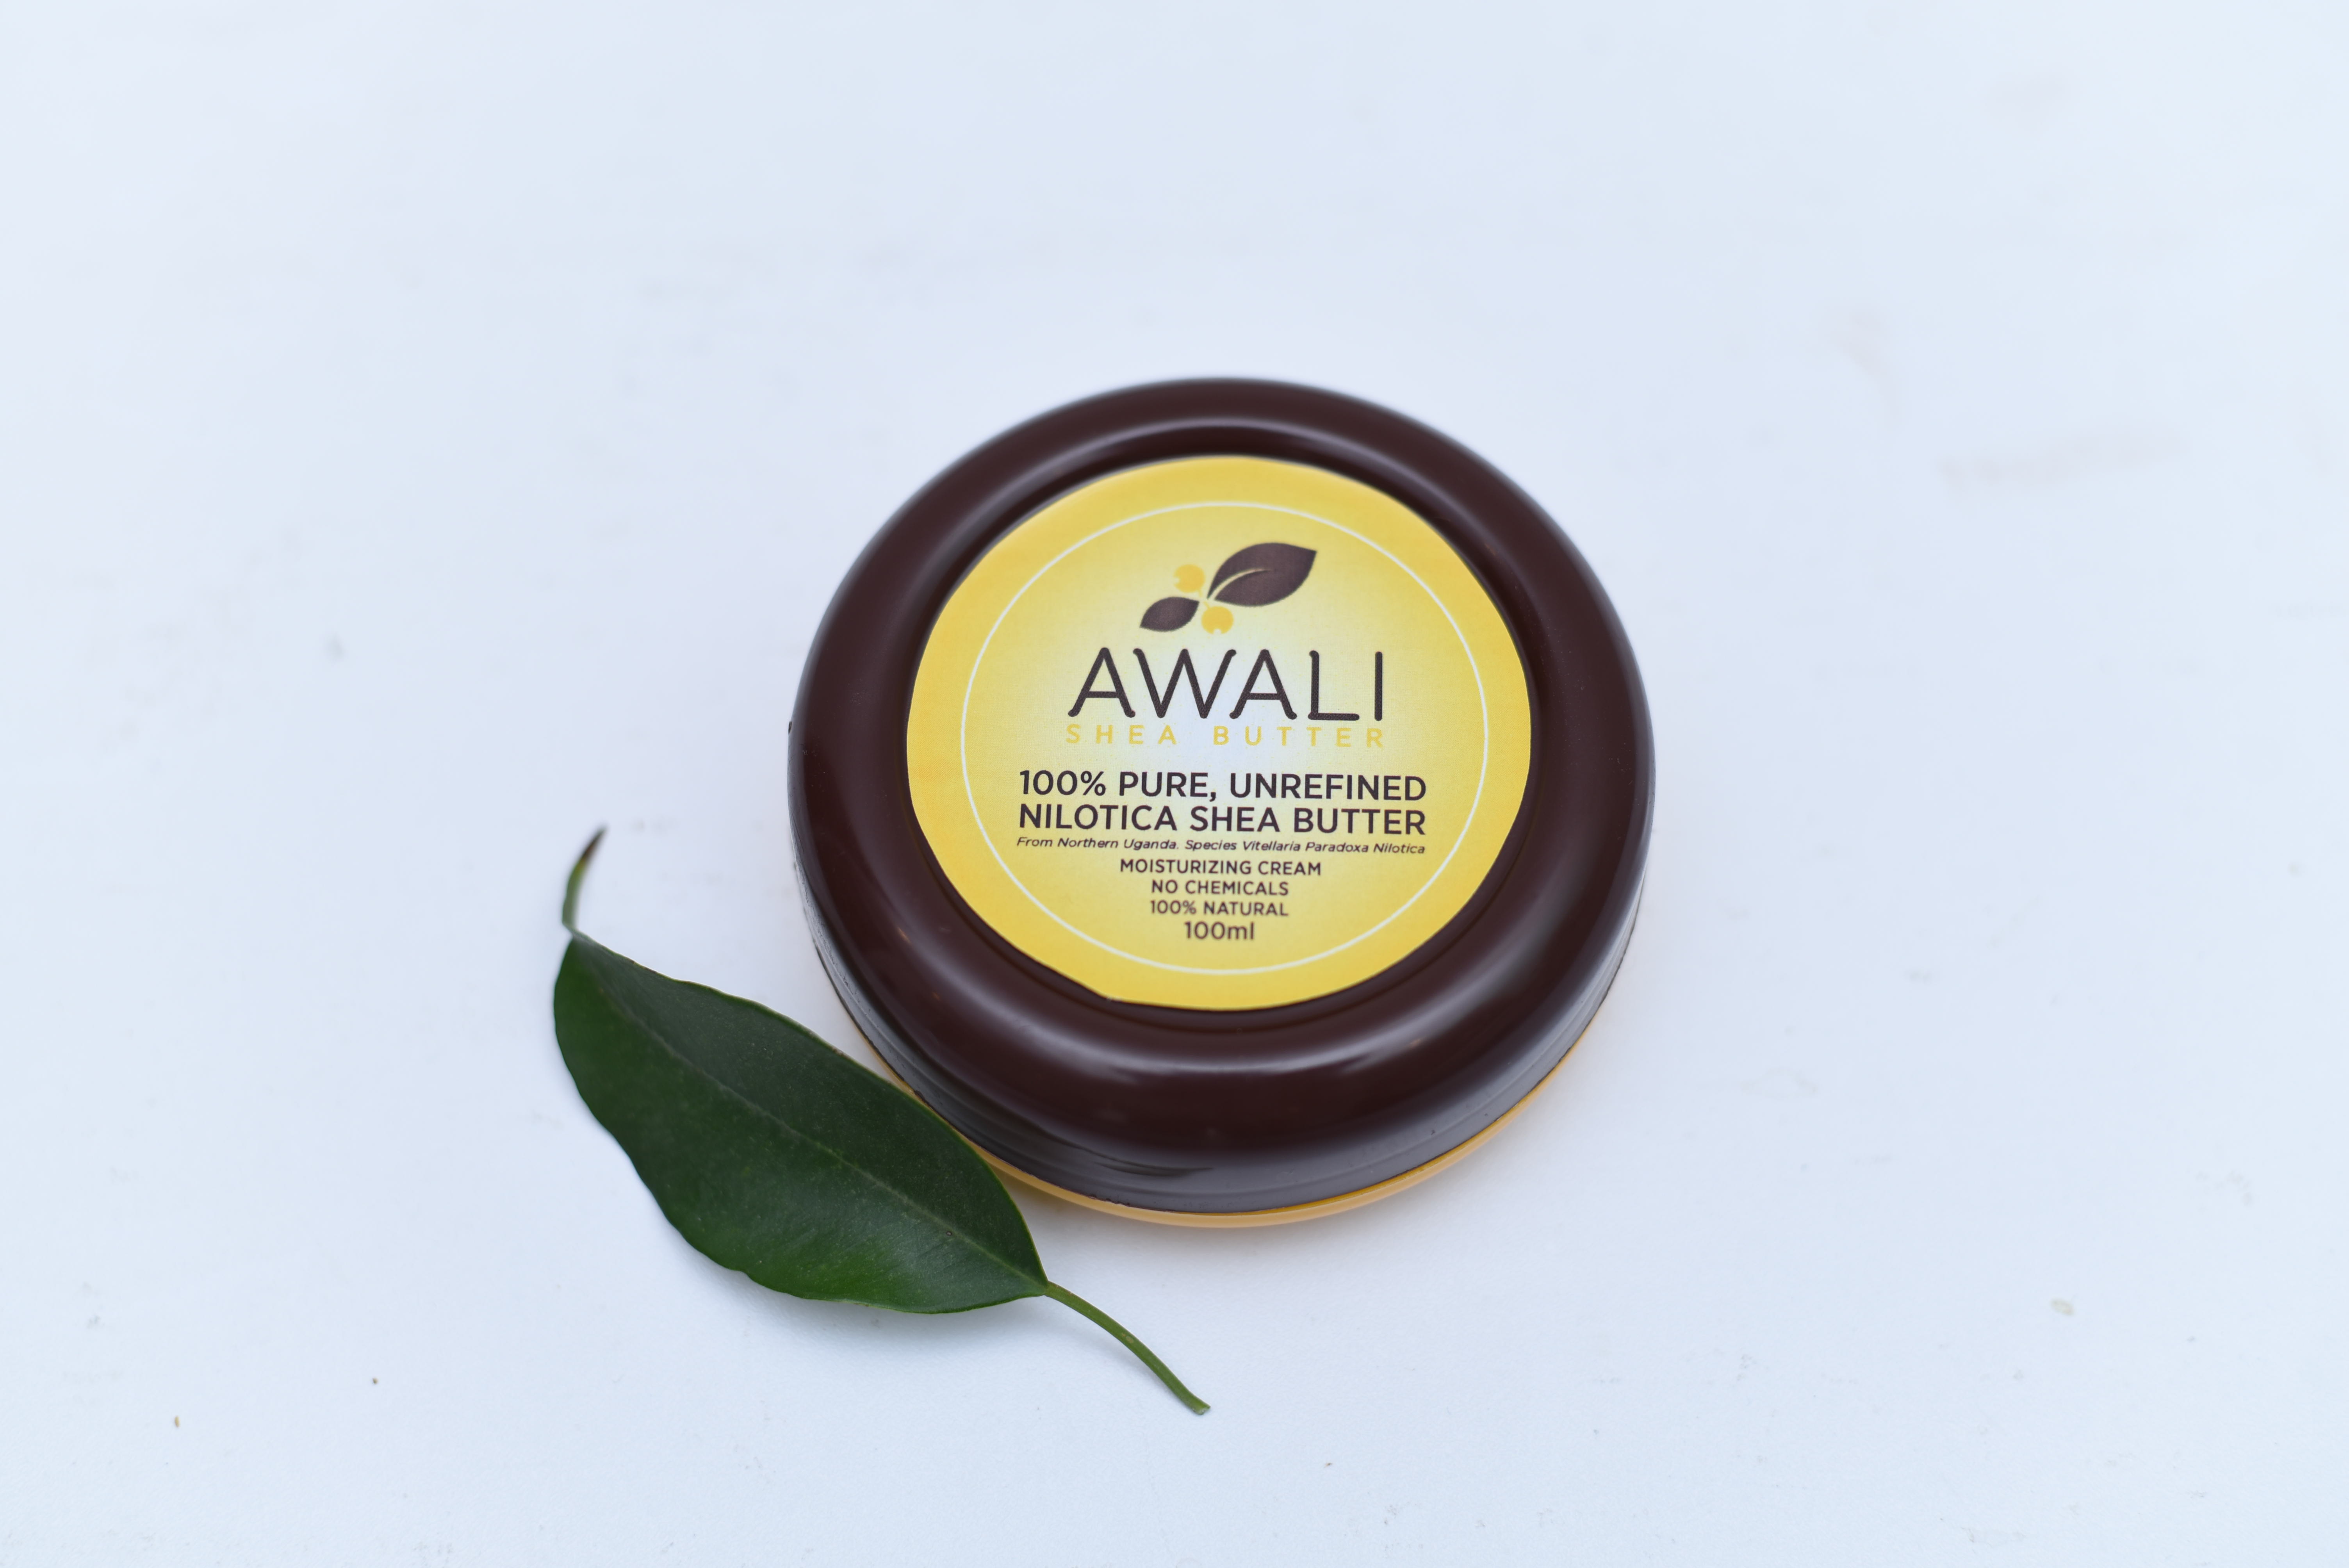 Awali product